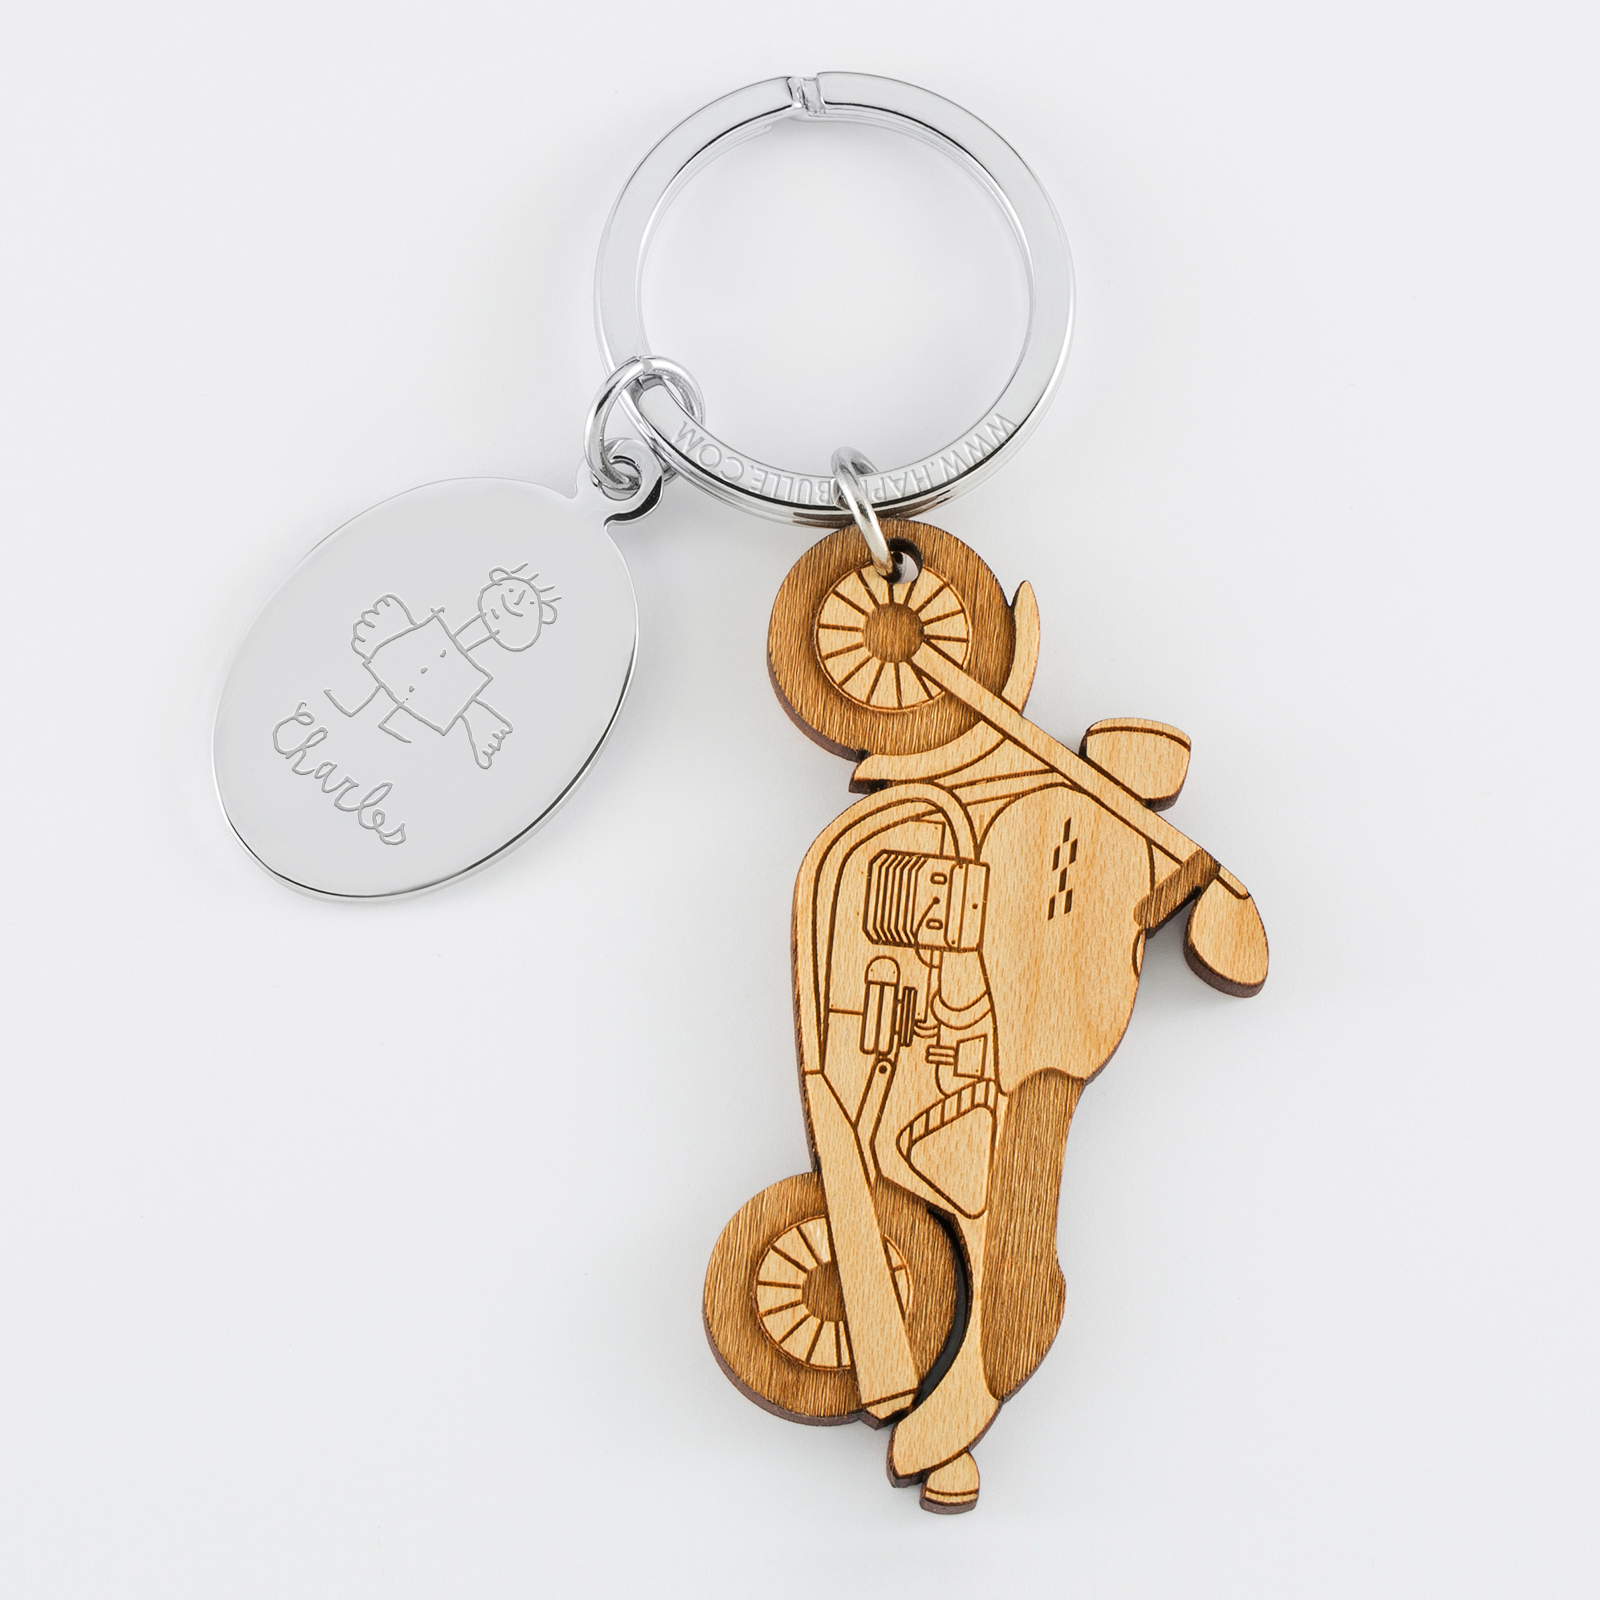 Un porte clés moto en idee cadeau personnalisé grace à un texte gravé sur  une medaille.